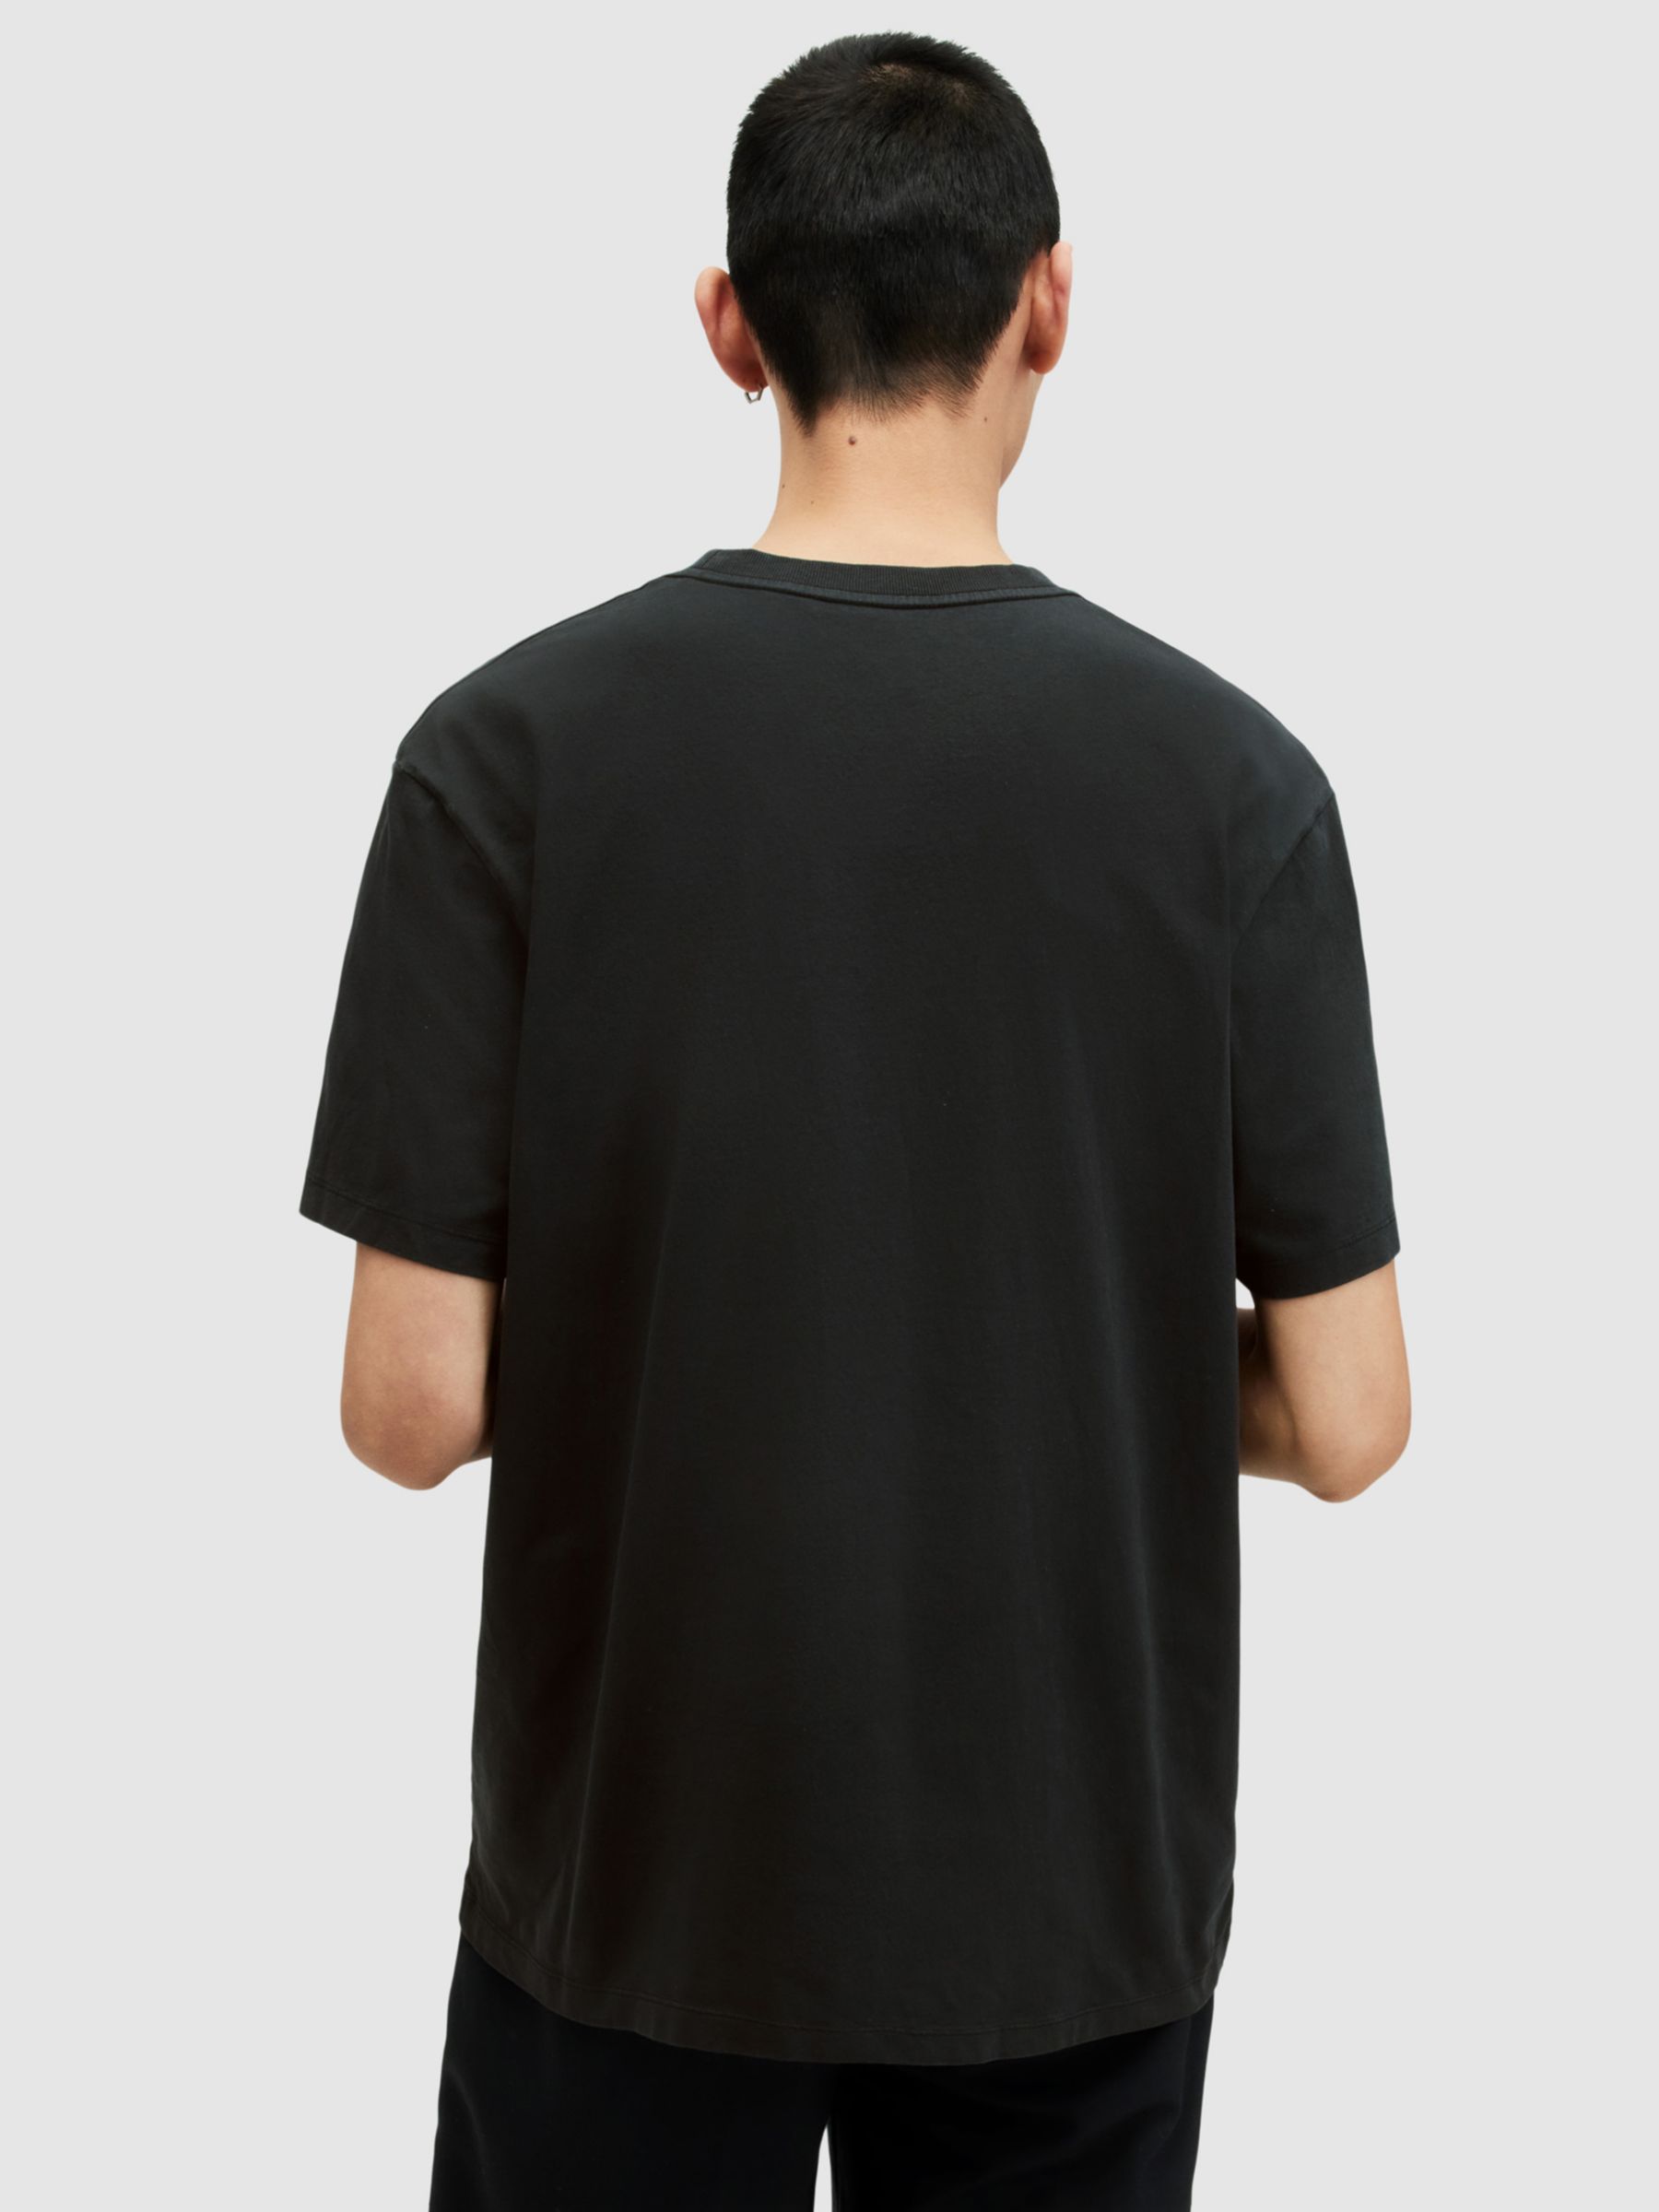 AllSaints Archon Short Sleeve Graphic T-Shirt, Washed Black, L